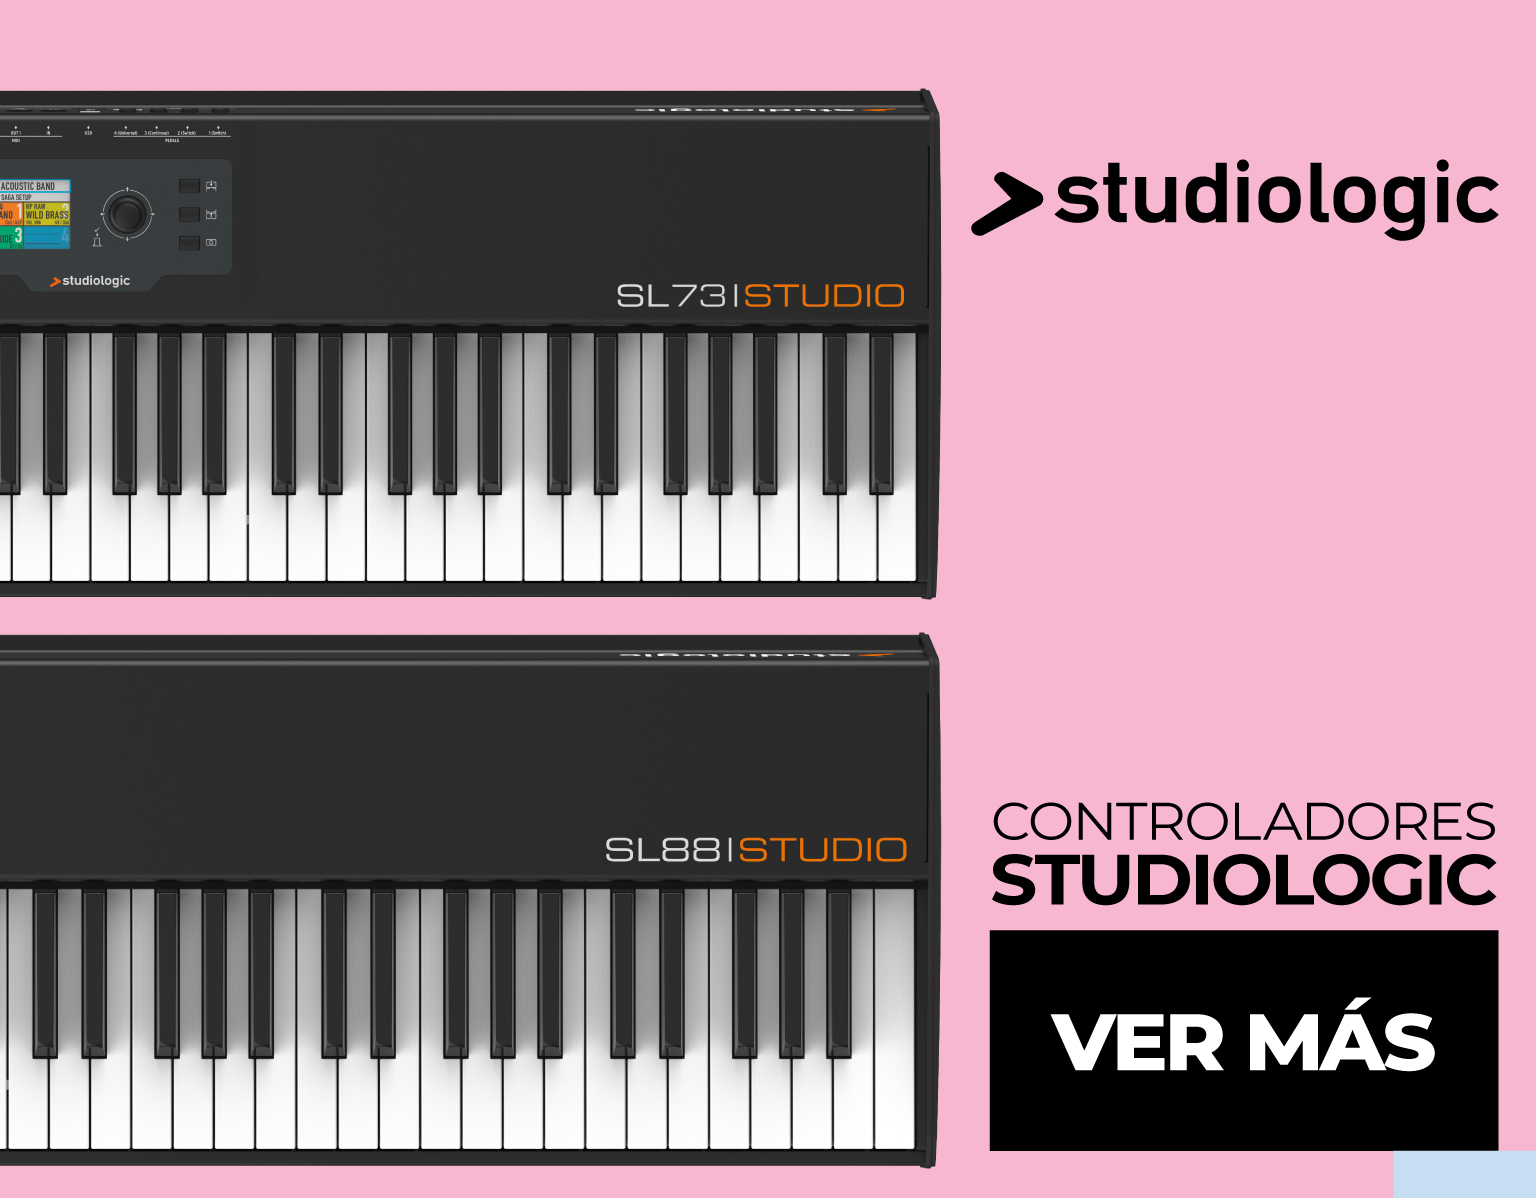 Controladore Studiologic